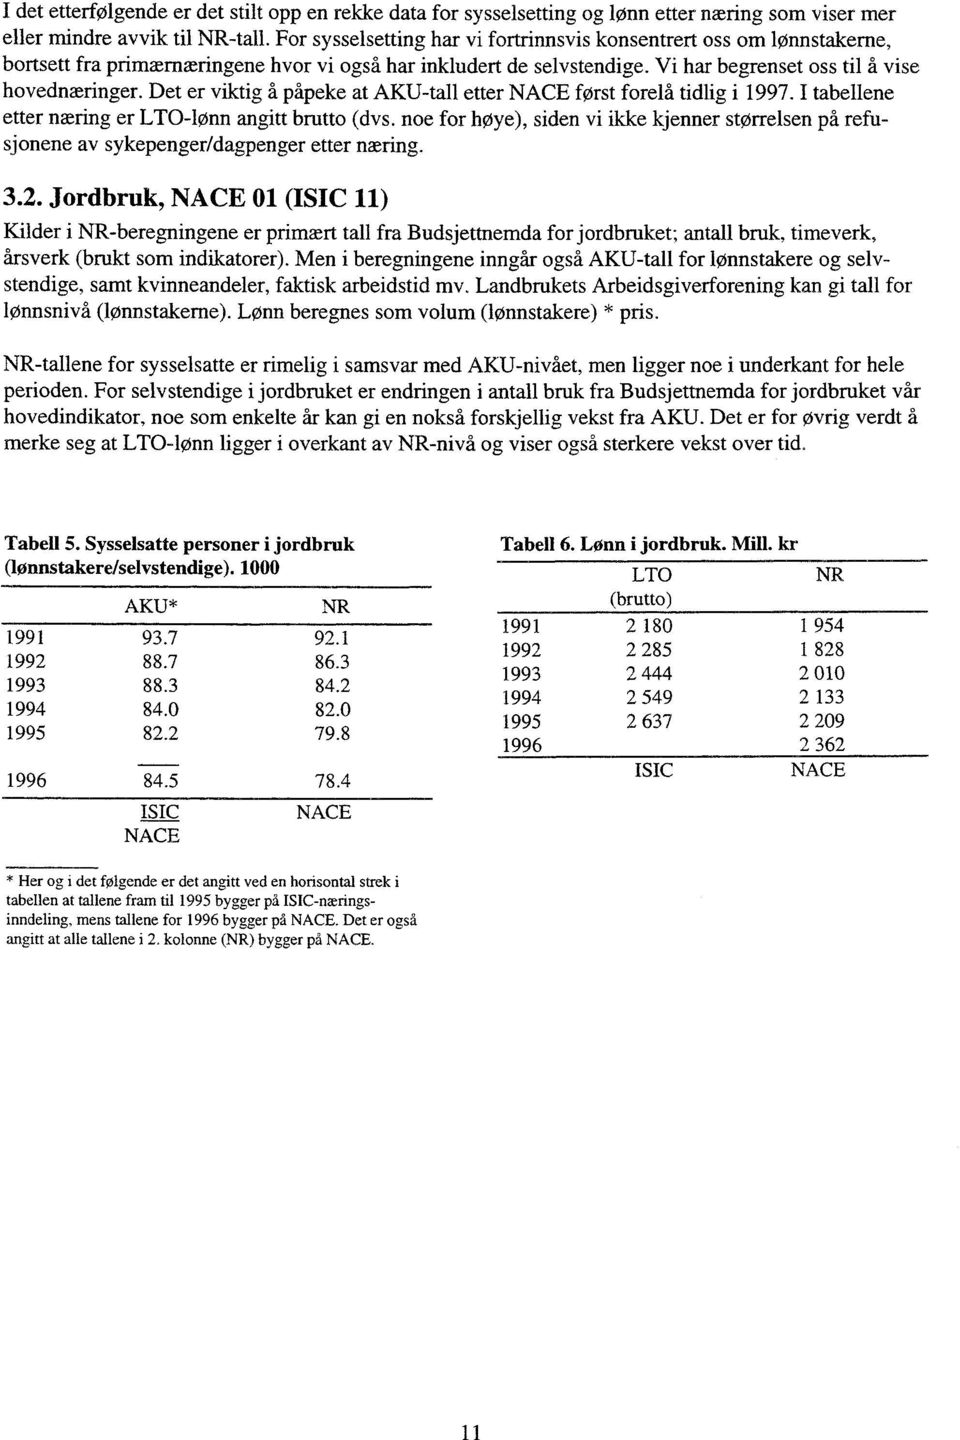 Det er viktig å påpeke at AKU-tall etter NACE først forelå tidlig i 1997. I tabellene etter næring er LTO-lønn angitt brutto (dvs.